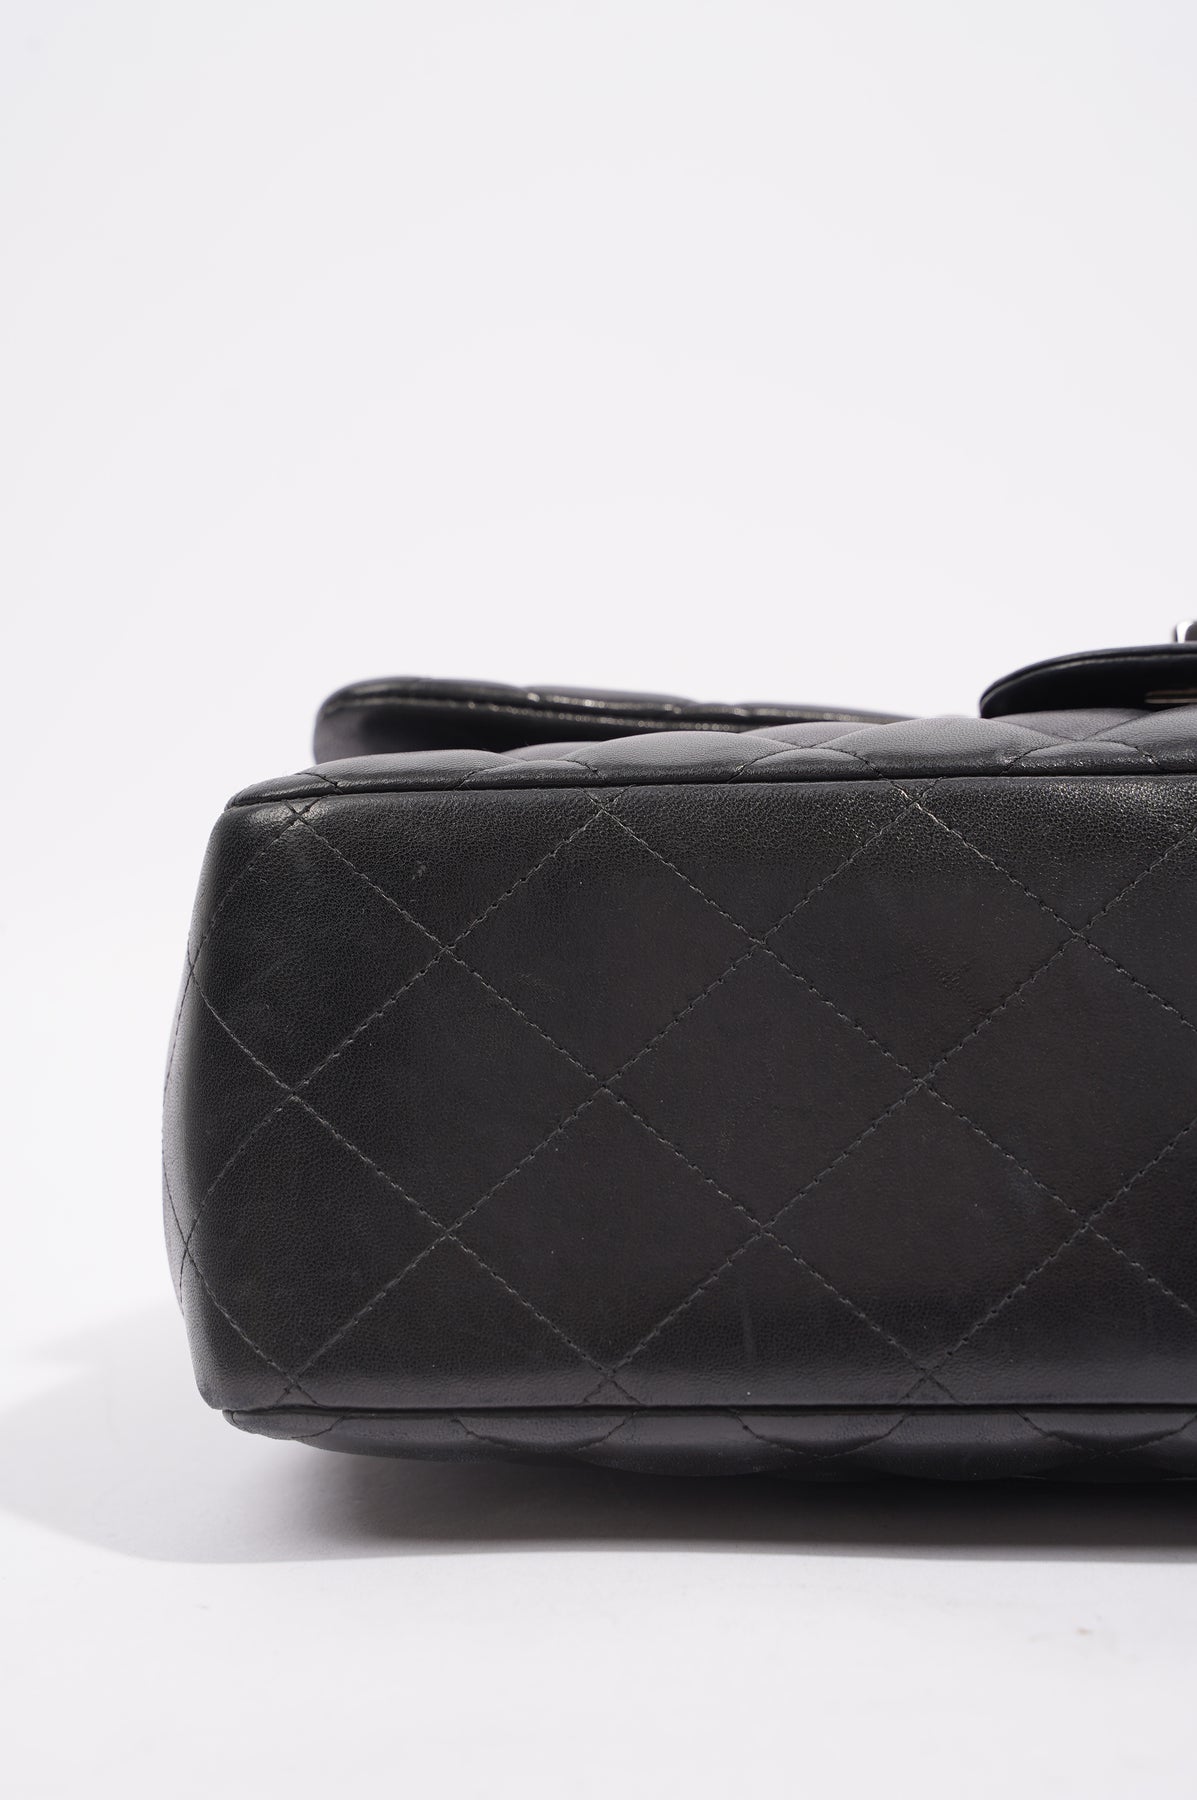 Chanel Jumbo Flap Bag (Black) from luxuryper.com?